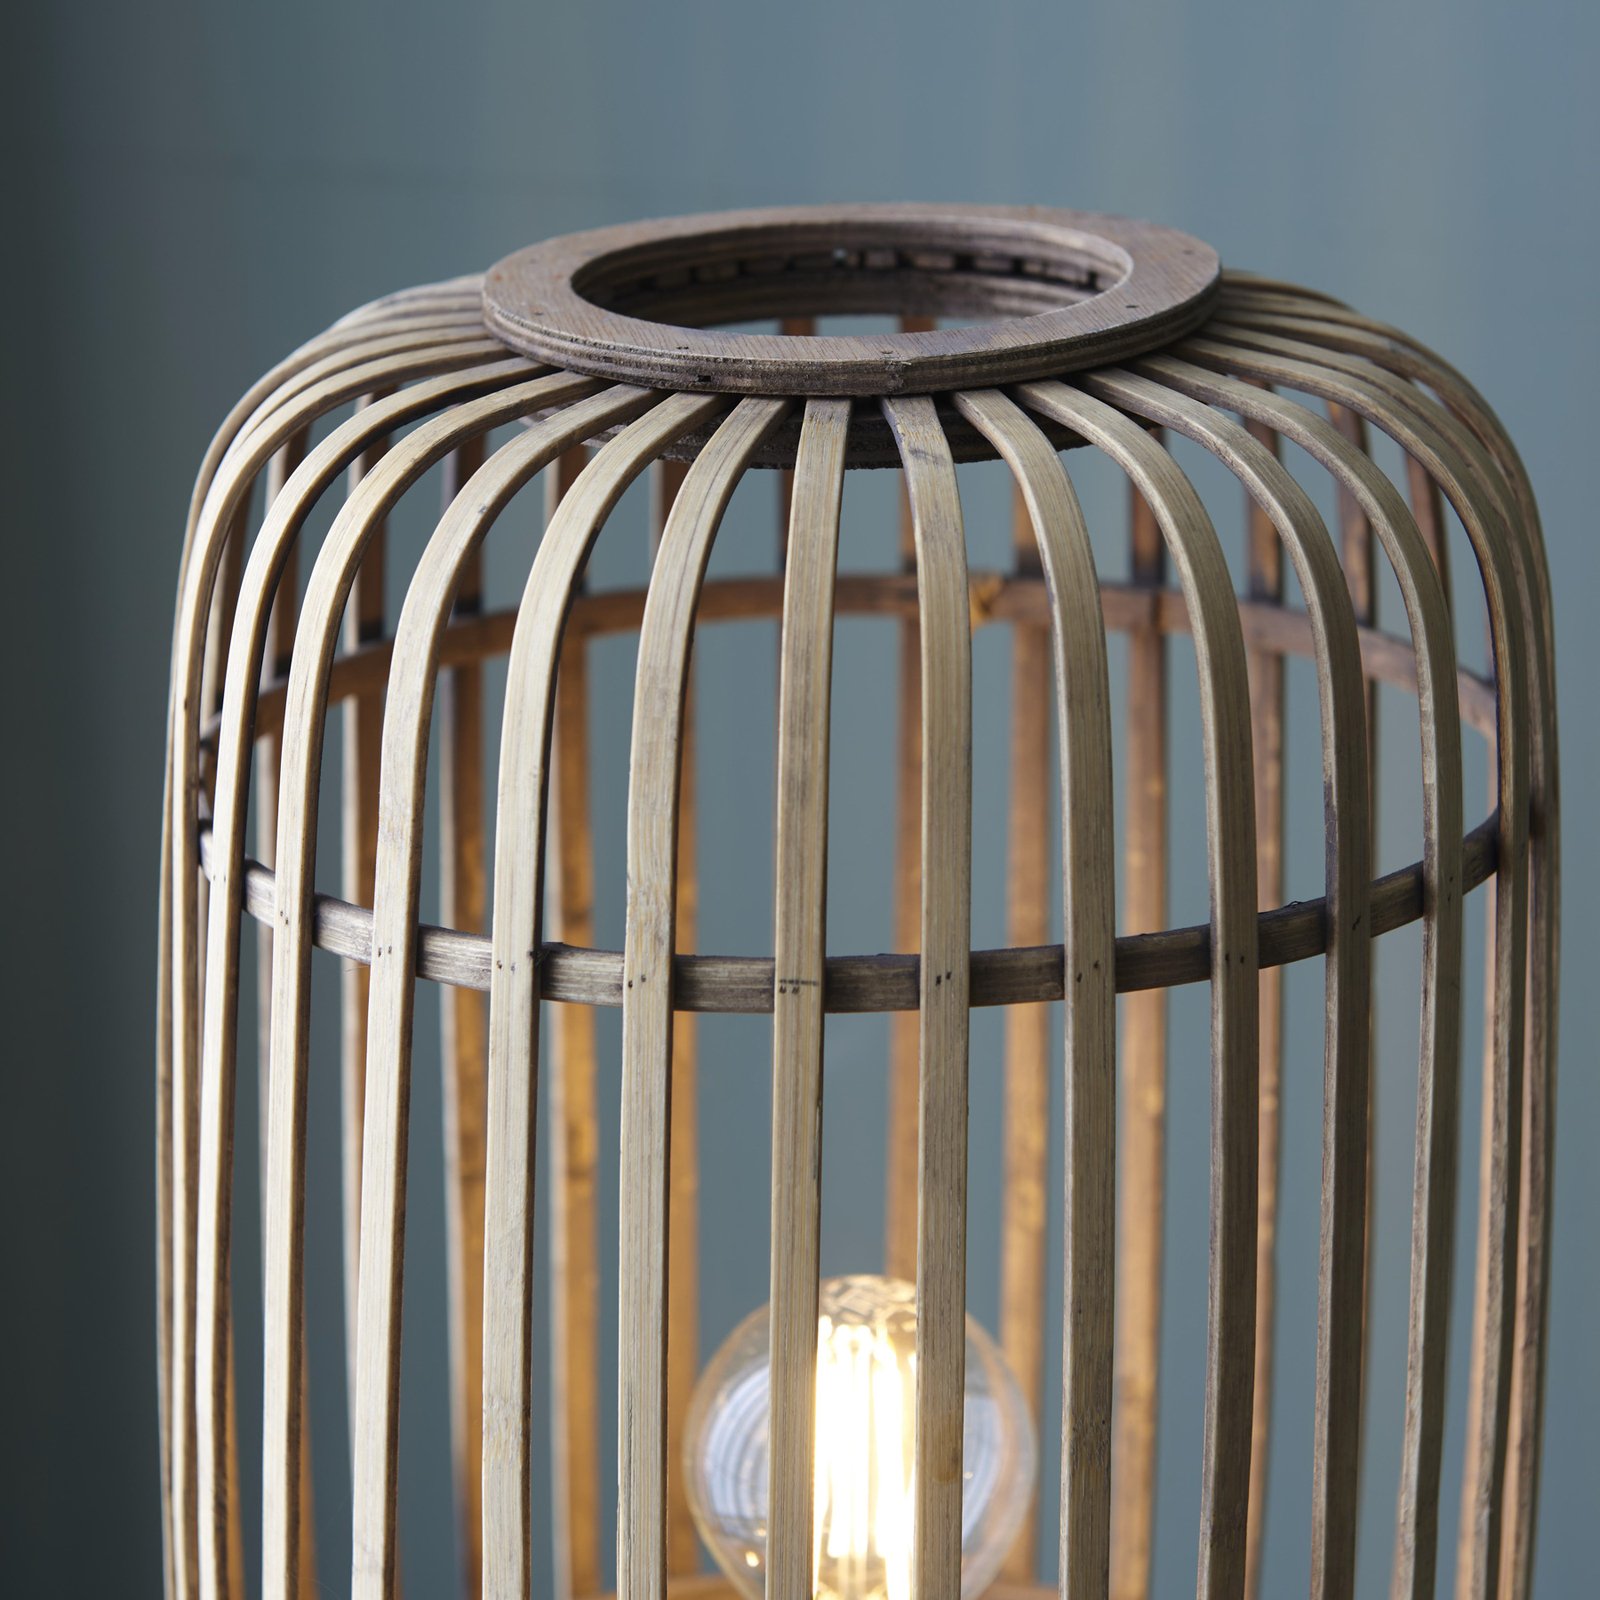 Stojací lampa Woodrow, výška 130 cm, světlé dřevo, bambus/kov